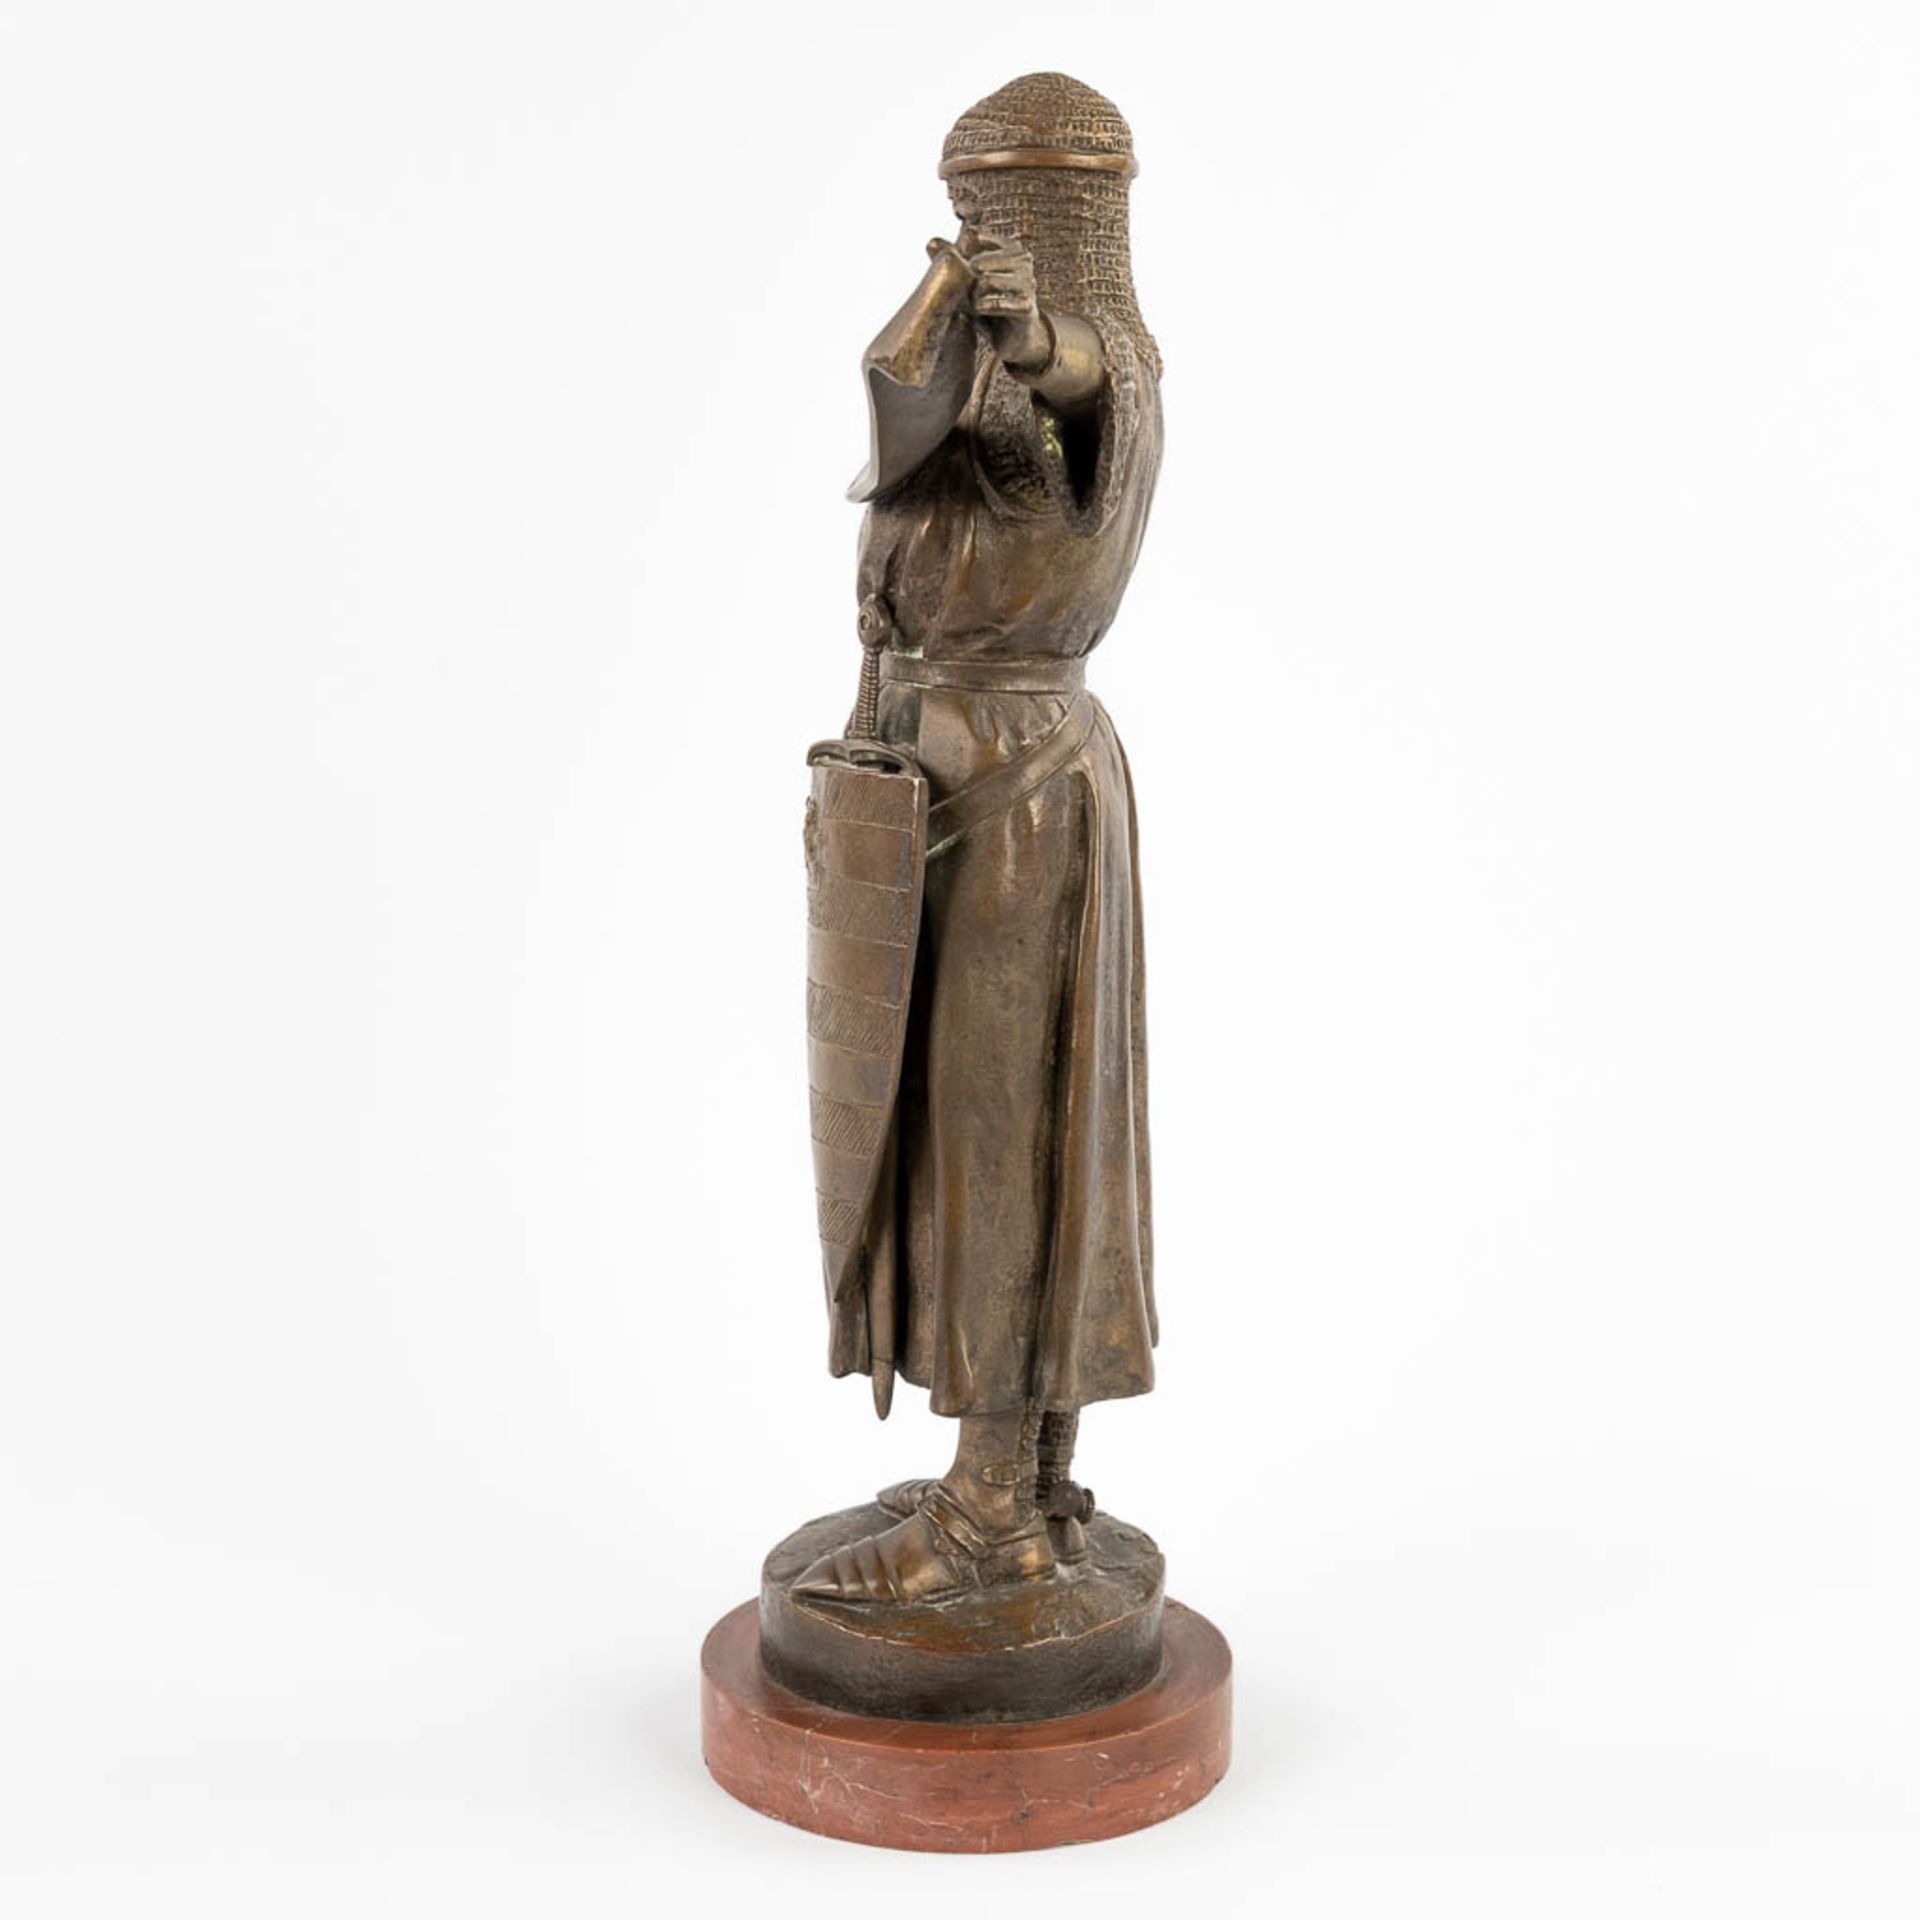 Emmanuel FRÉMIET (1824-1910) 'Credo' patinated bronze. 19th C. (D:13 x W:31 x H:41 cm) - Image 4 of 13